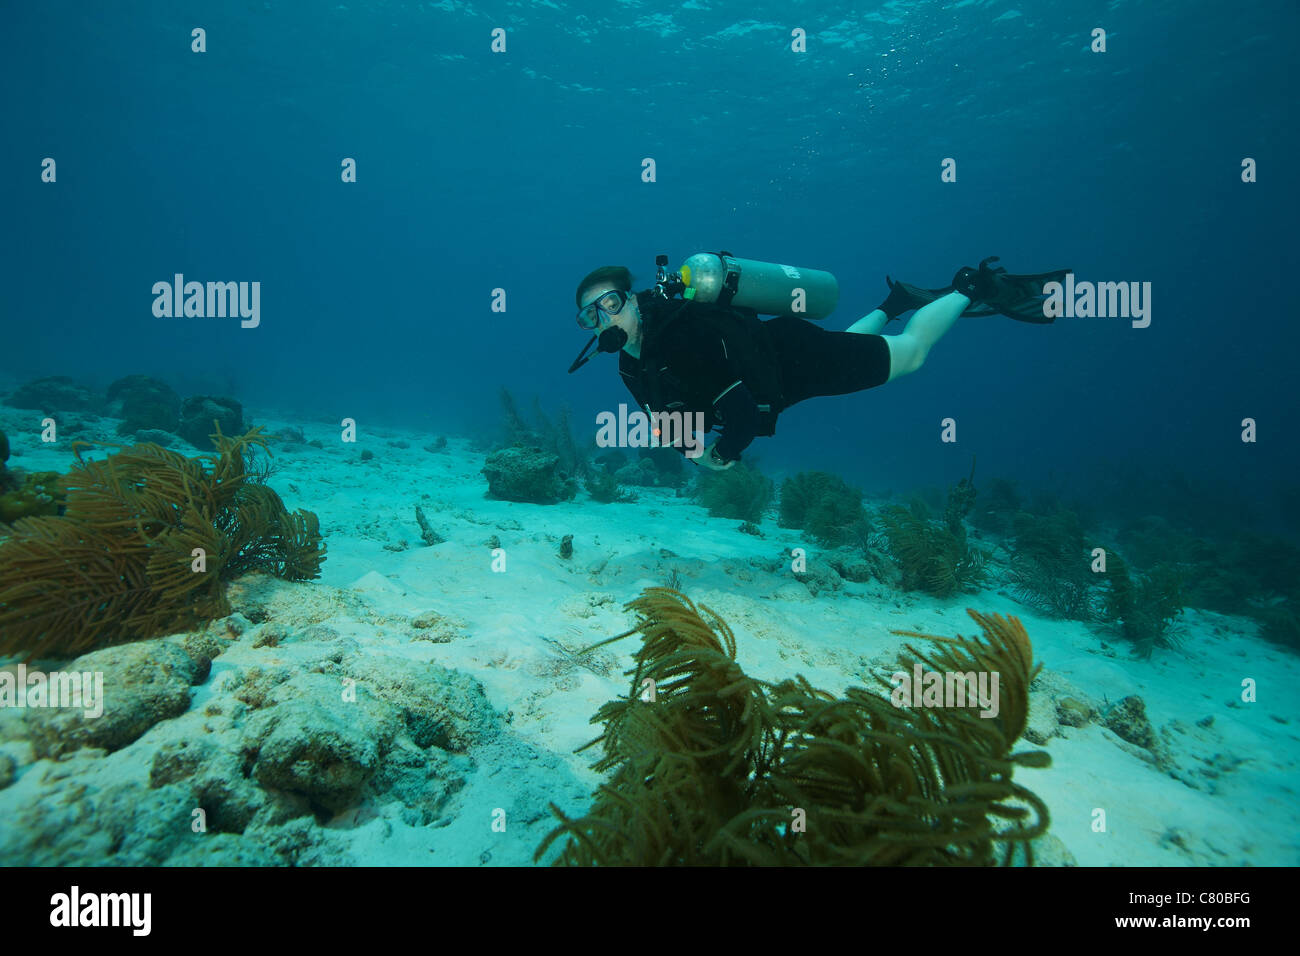 Scuba Diver nuoto sott'acqua di Alice nel Paese delle Meraviglie sito di immersione in Bonaire, dei Caraibi Paesi Bassi. Foto Stock